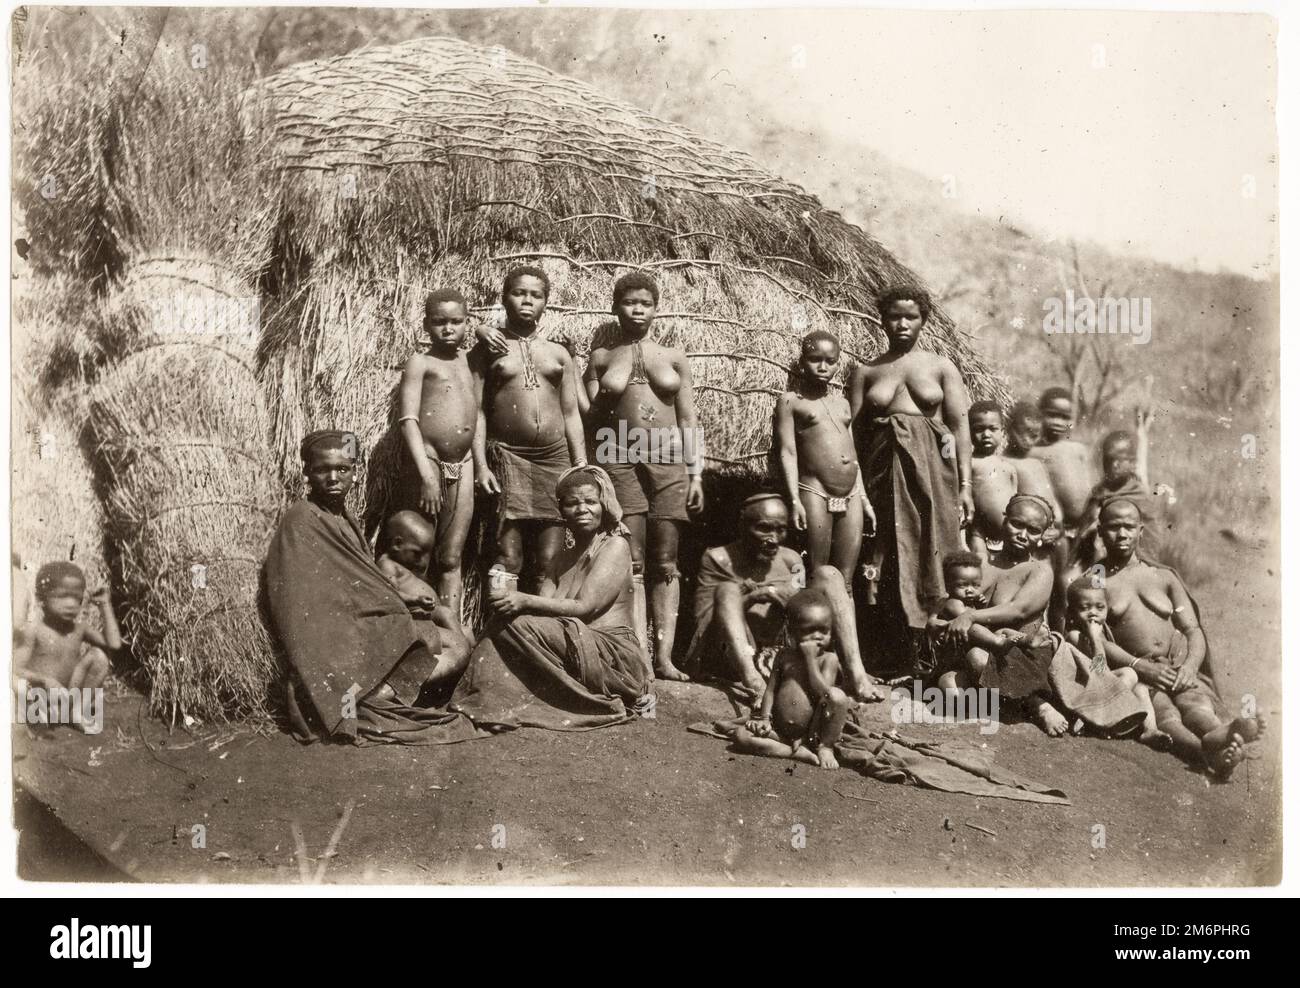 Photographie du 19th siècle : groupe Zulu, Afrique du Sud Banque D'Images